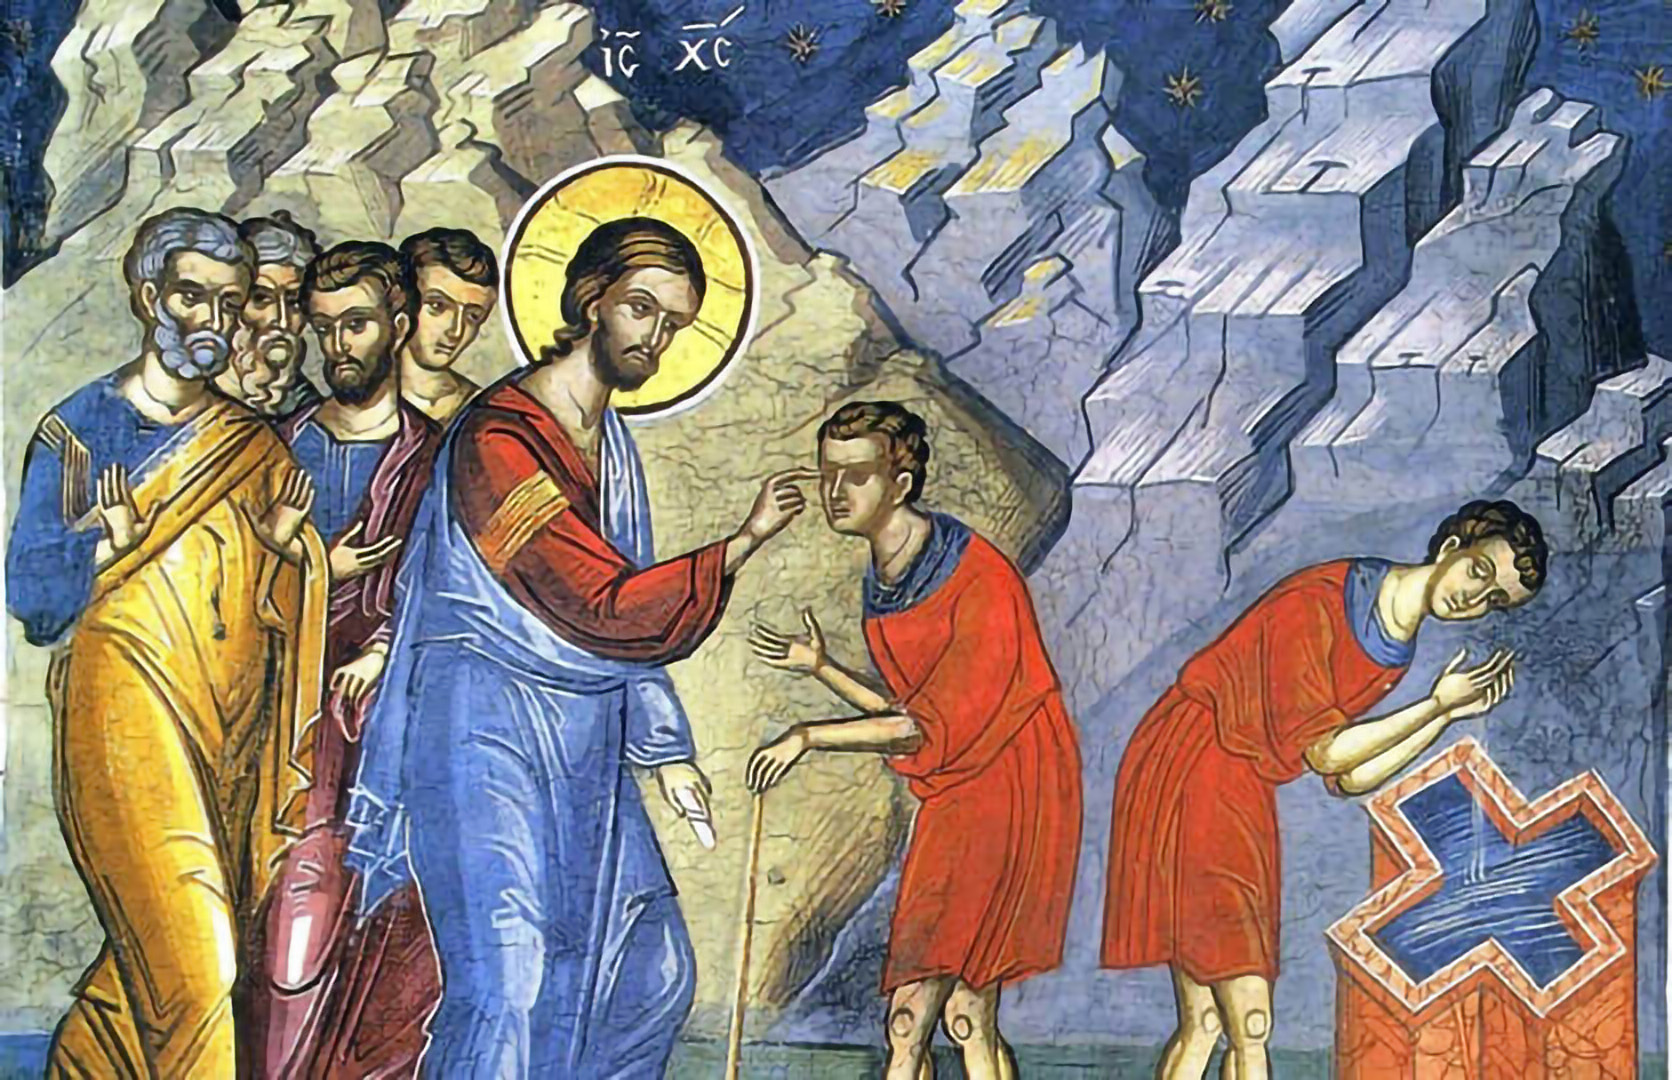 Painting of Jesus wiping mud in man's eyes